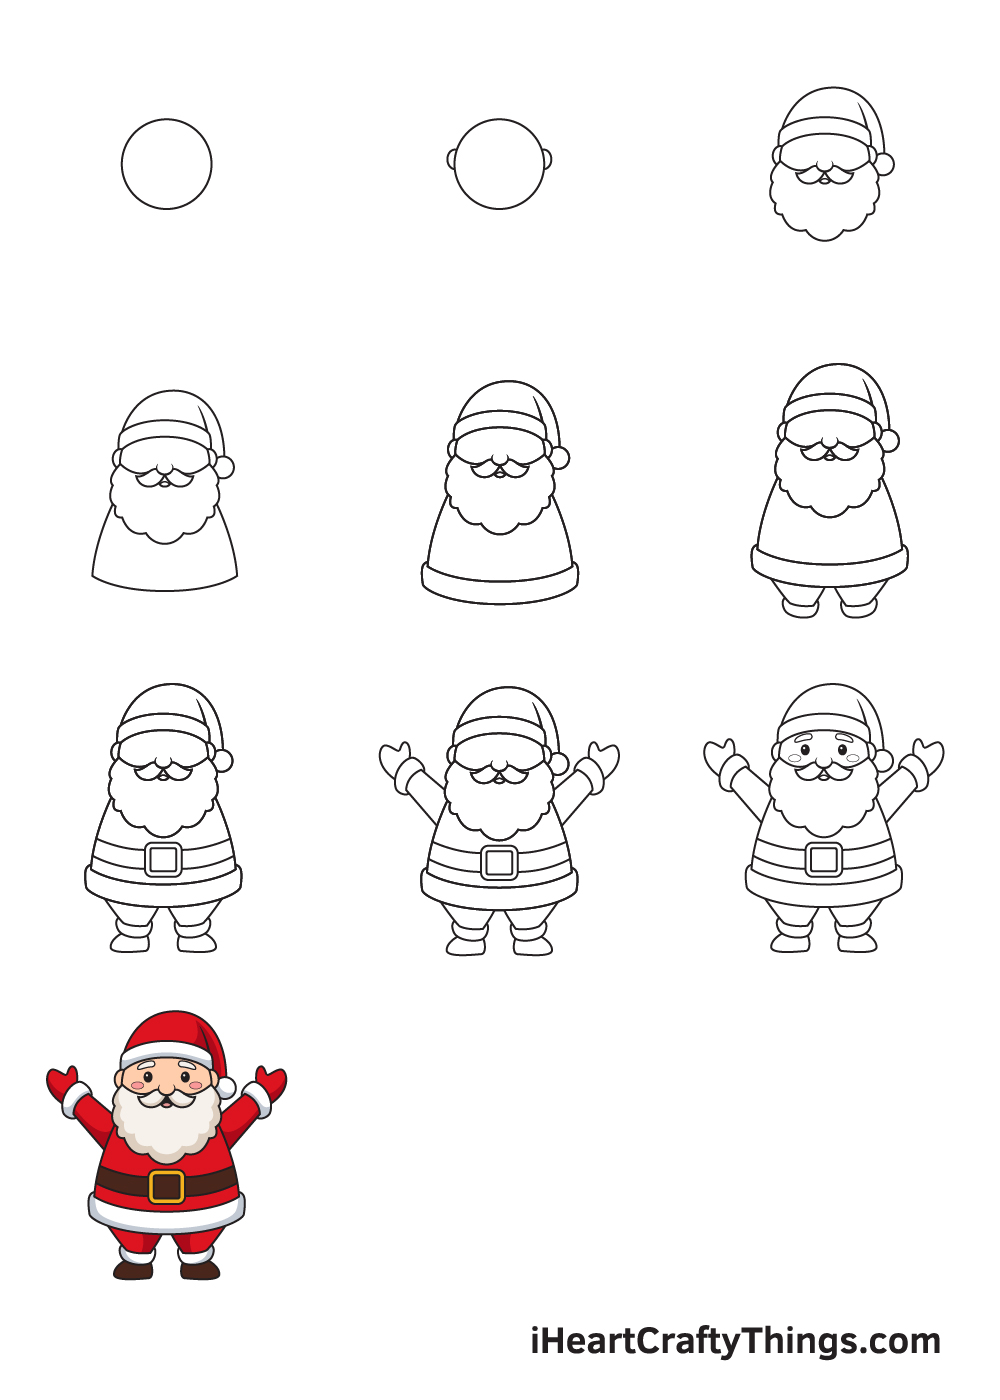 Drawing Santa Claus in 10 Easy Steps - Hướng dẫn chi tiết cách vẽ ông già noel đơn giản đẹp với 9 bước cơ bản